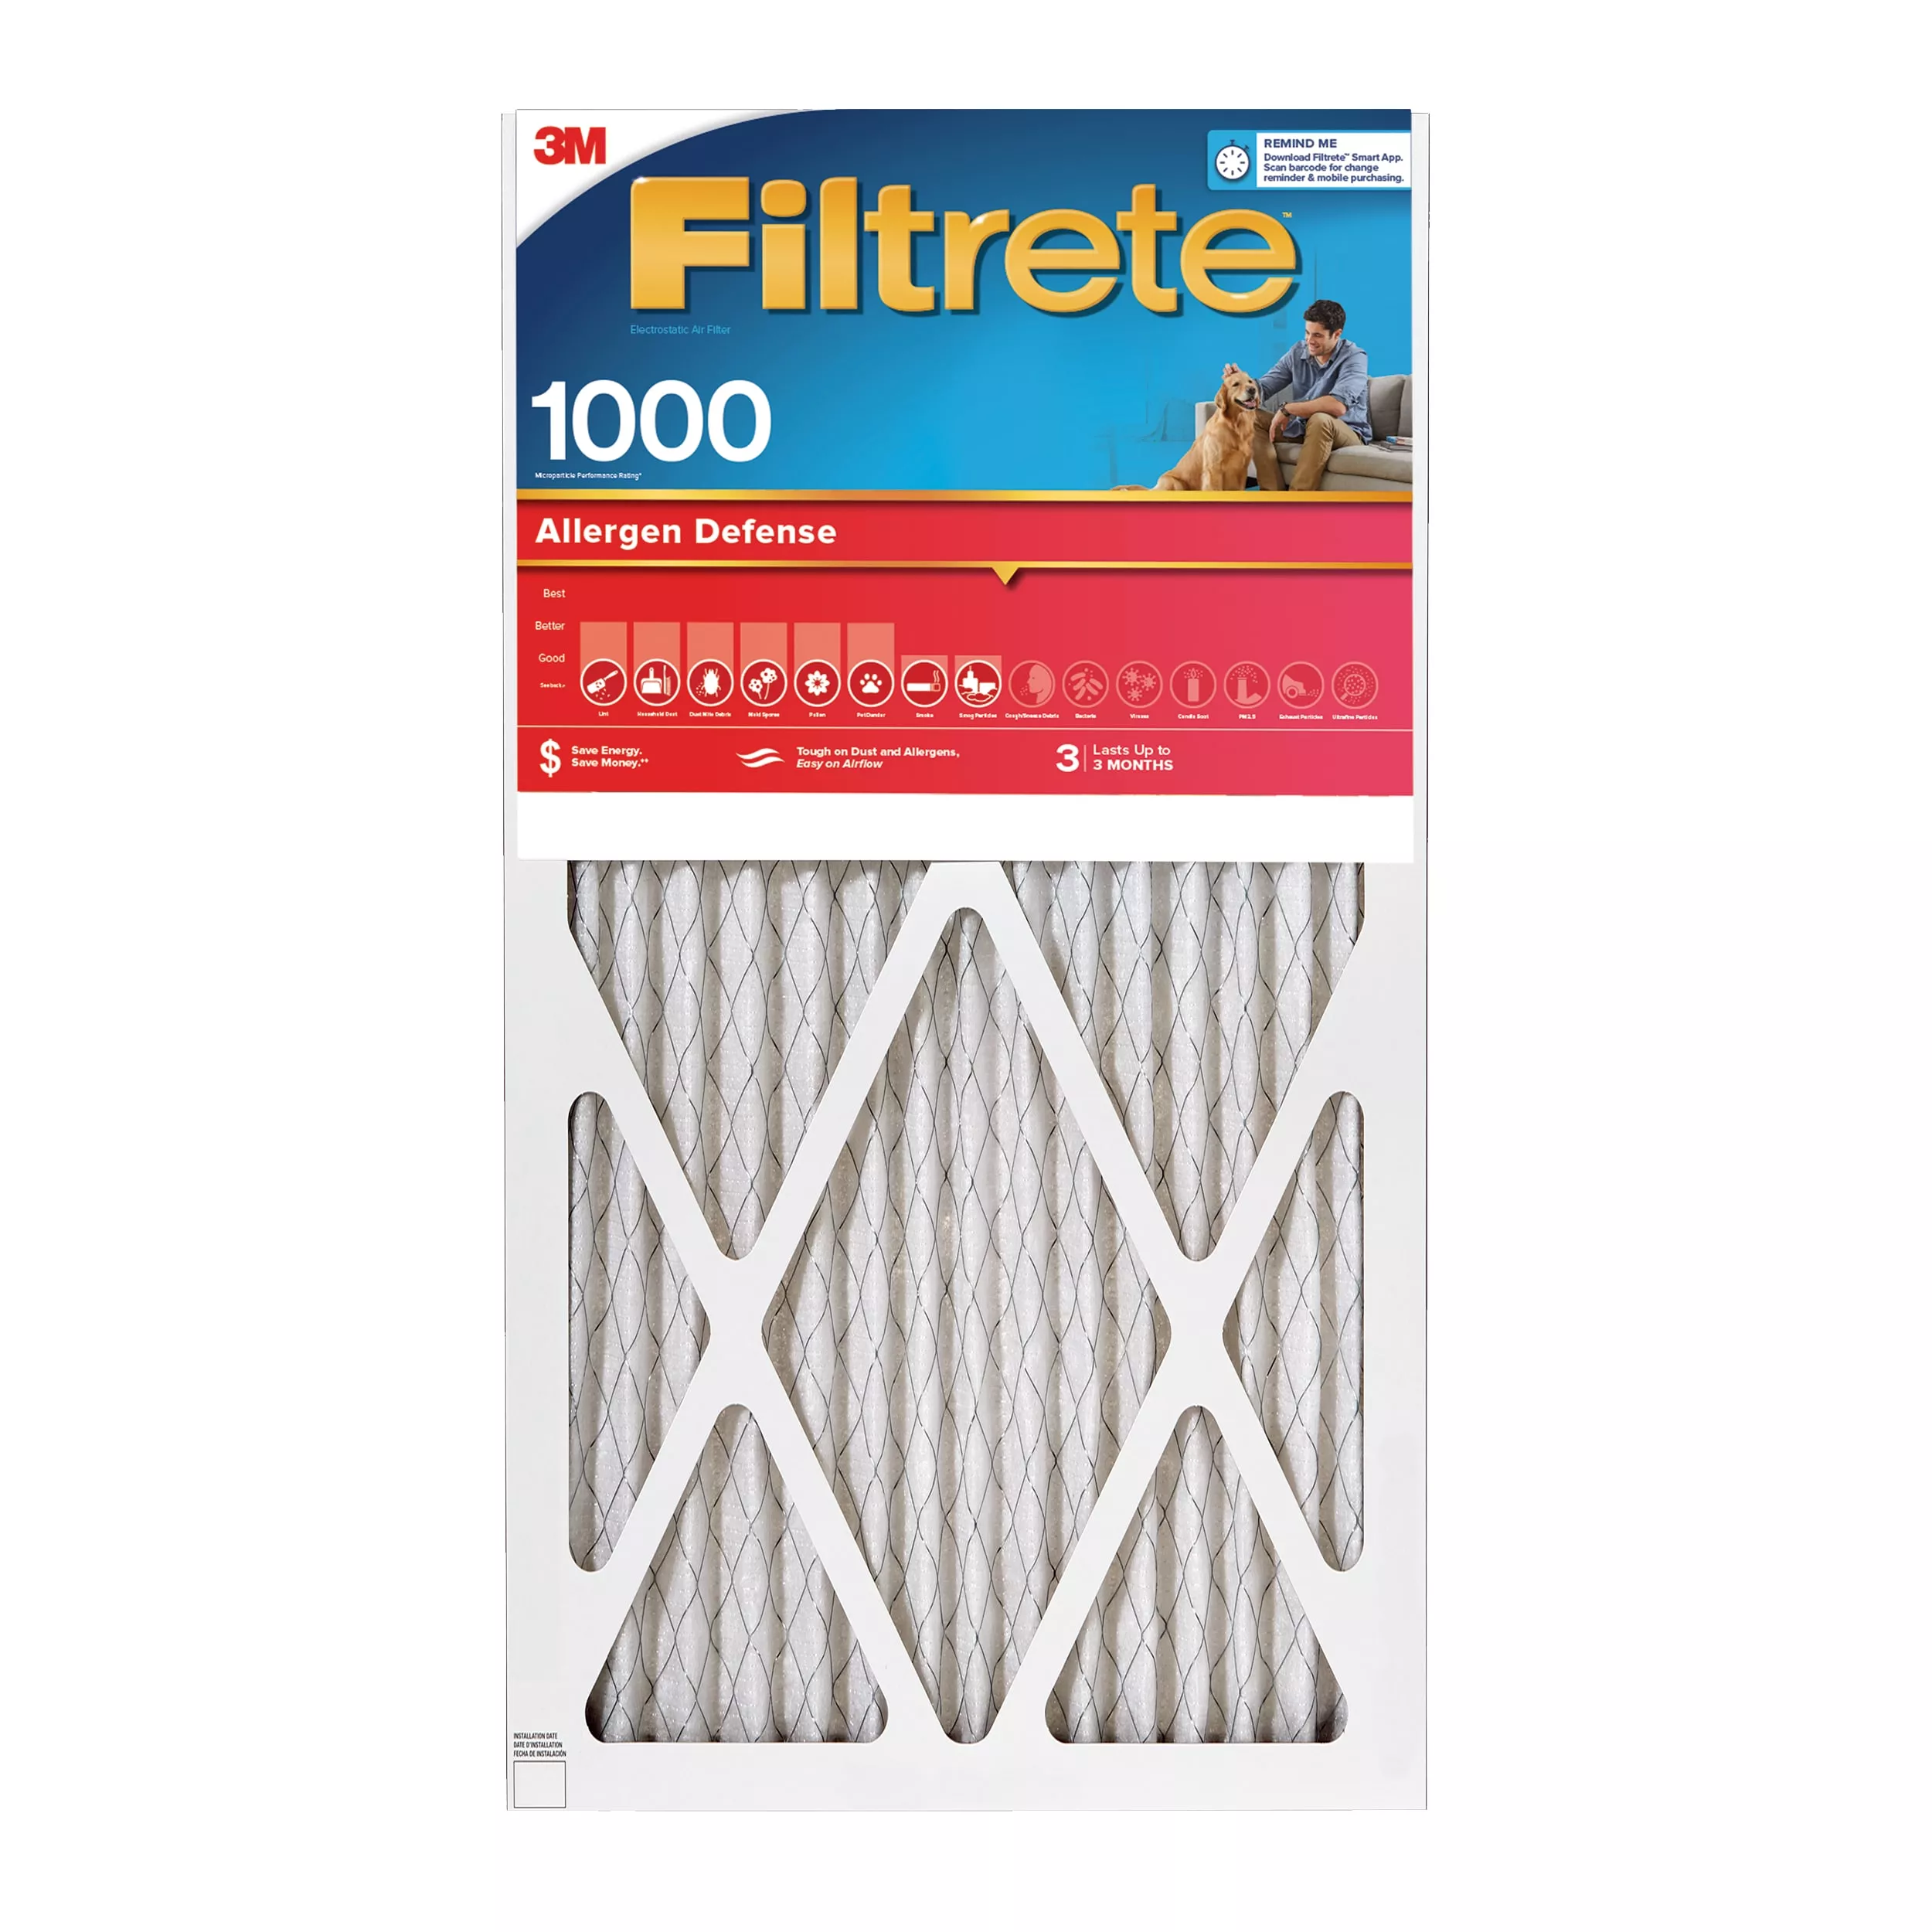 Filtrete™ Allergen Defense Air Filter, 1000 MPR, 9805-2PK-HDW, 14 in x
20 in x 1 in (35,5 cm x 50,8 cm x 2,5 cm)